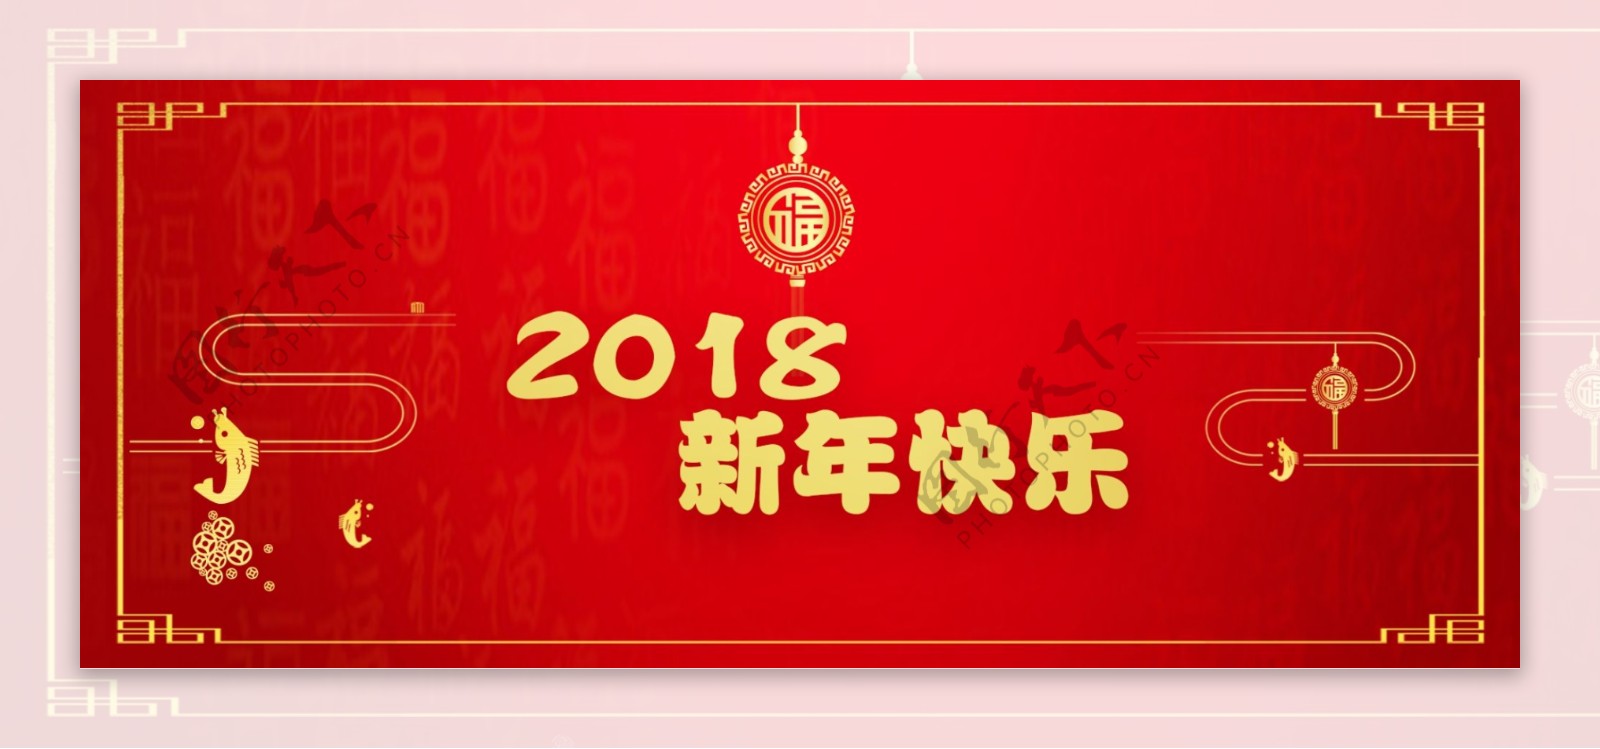 2018新年快乐网页banner